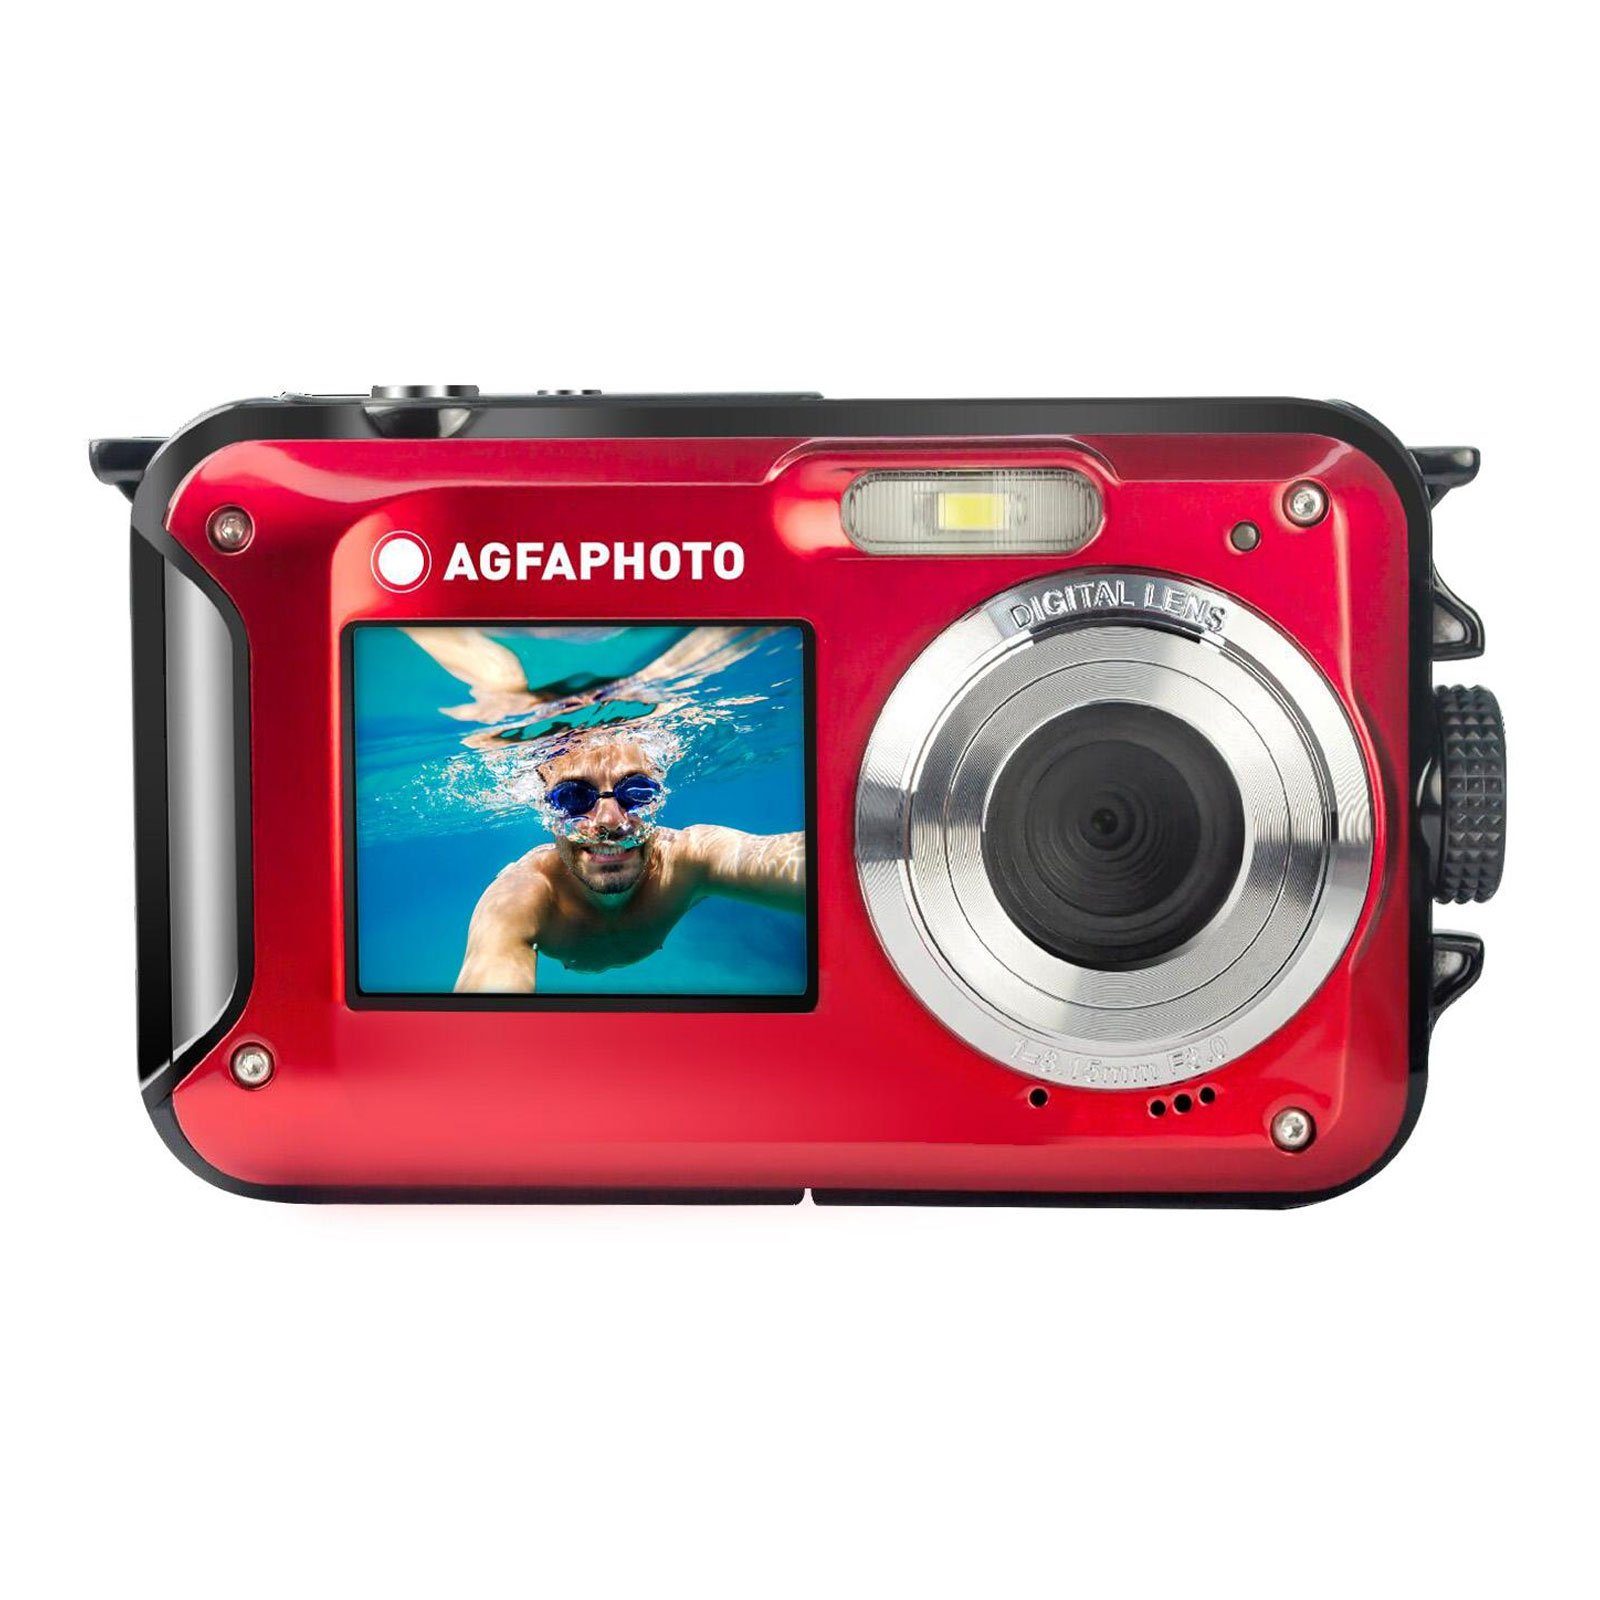 16X Kompaktkamera WP8000 AGFA (Gesichtserkennung, Bildstabilisierung) zoom, digital